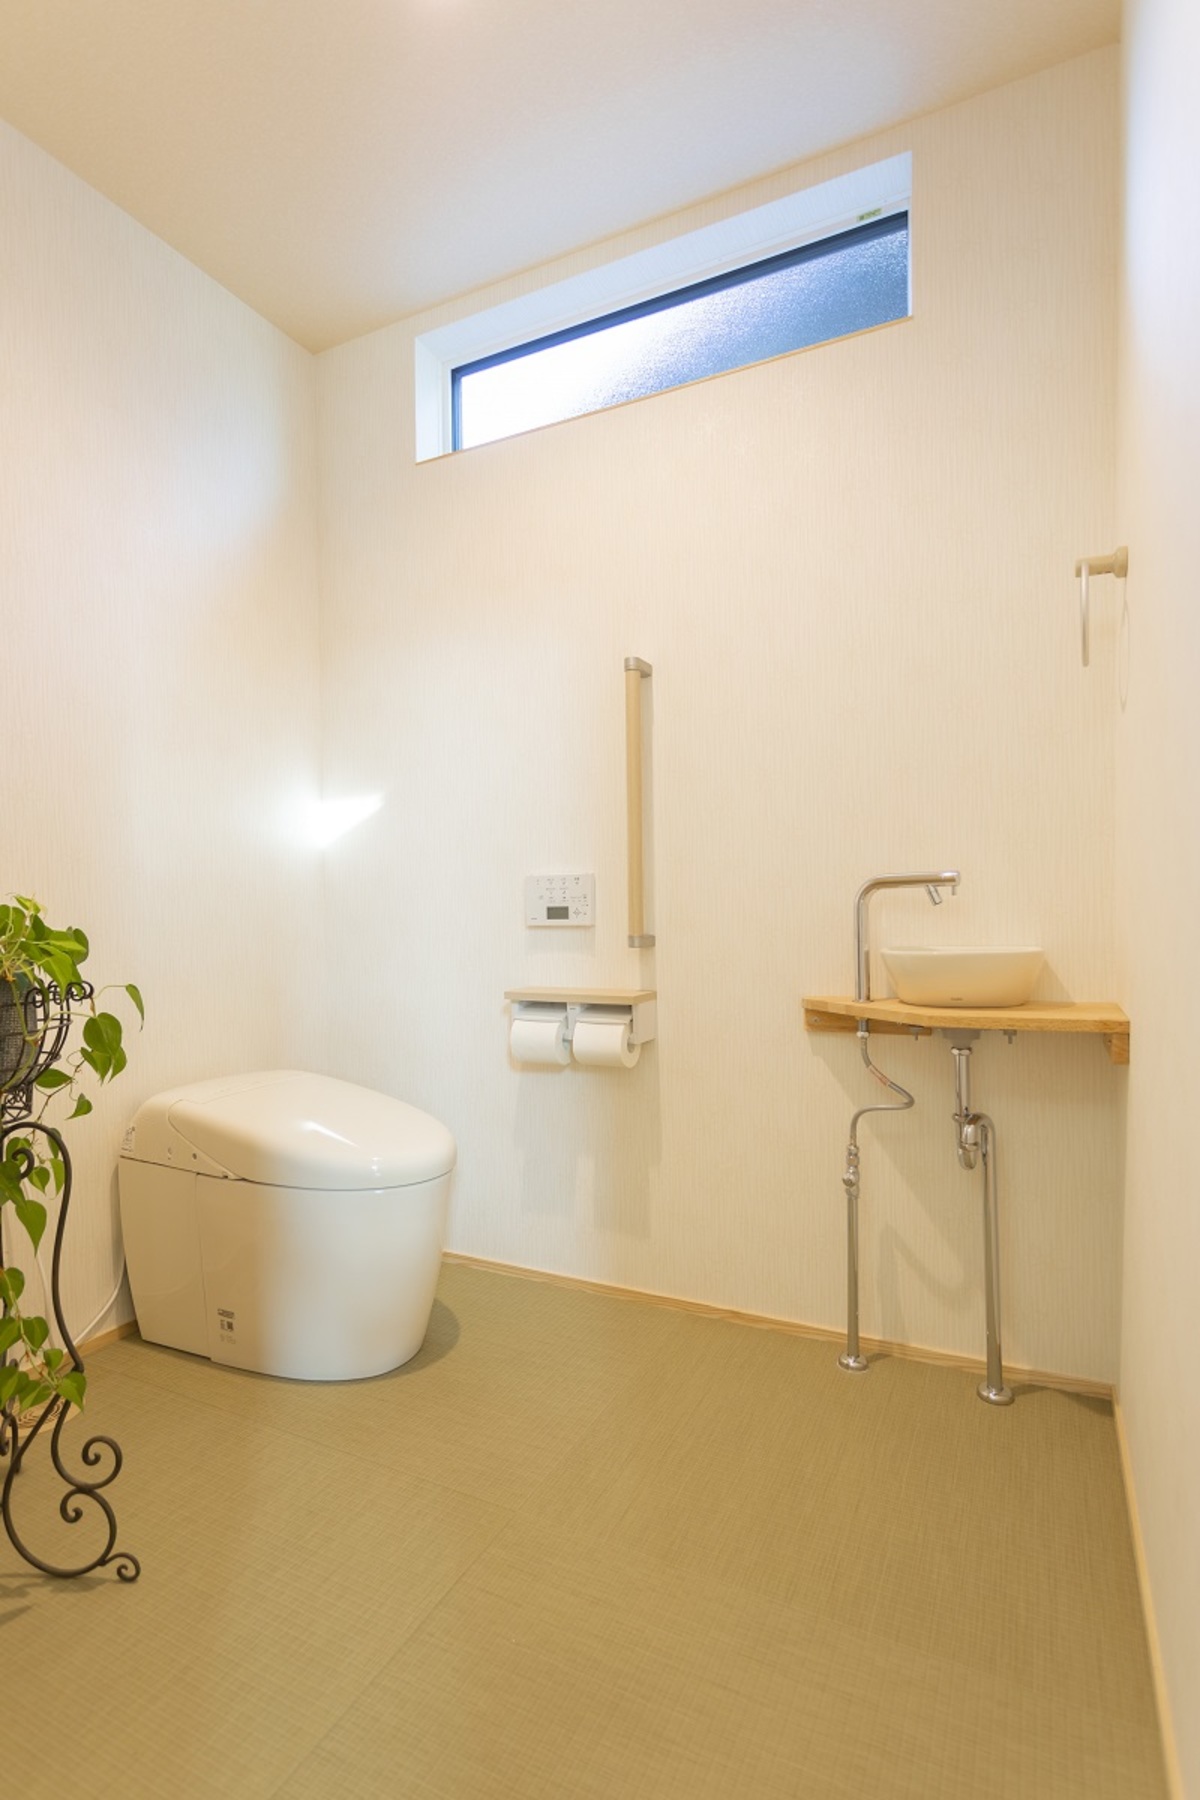 「一歩」ゆったり広いトイレ 【ピース島根】島根県の新築住宅、住宅メーカー情報